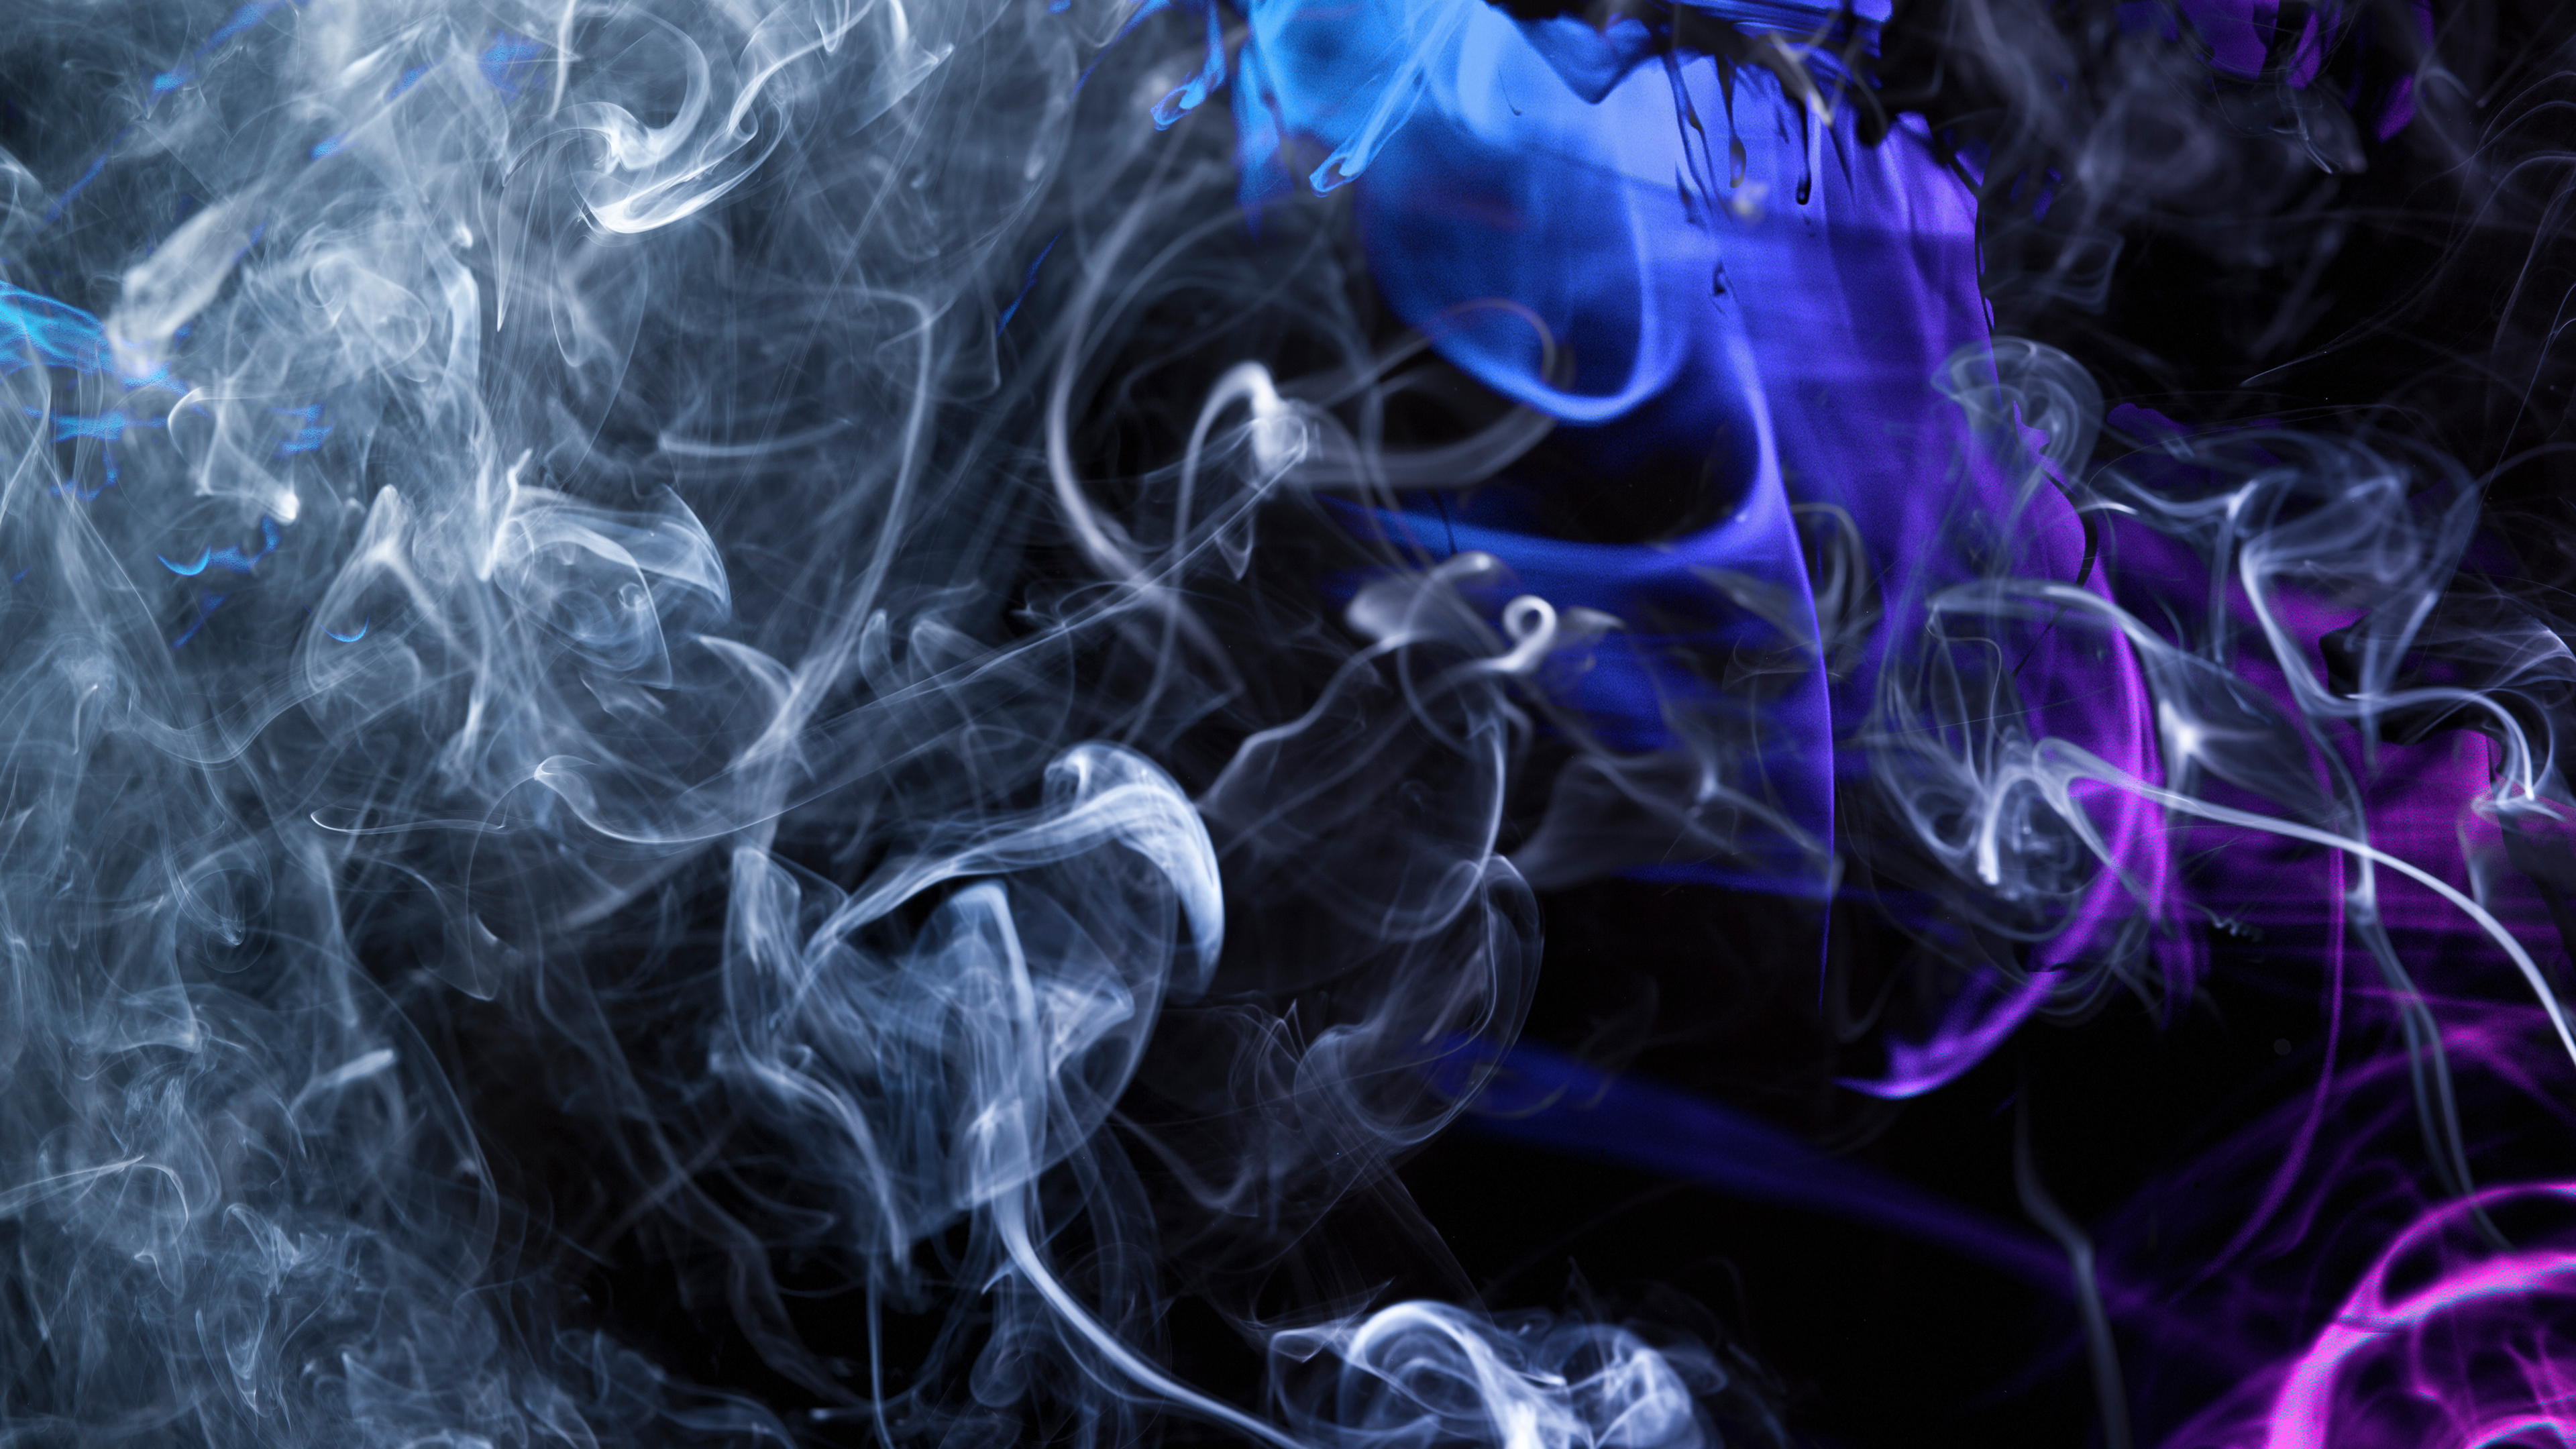 fond d'écran de fumée,fumée,bleu,violet,violet,bleu électrique